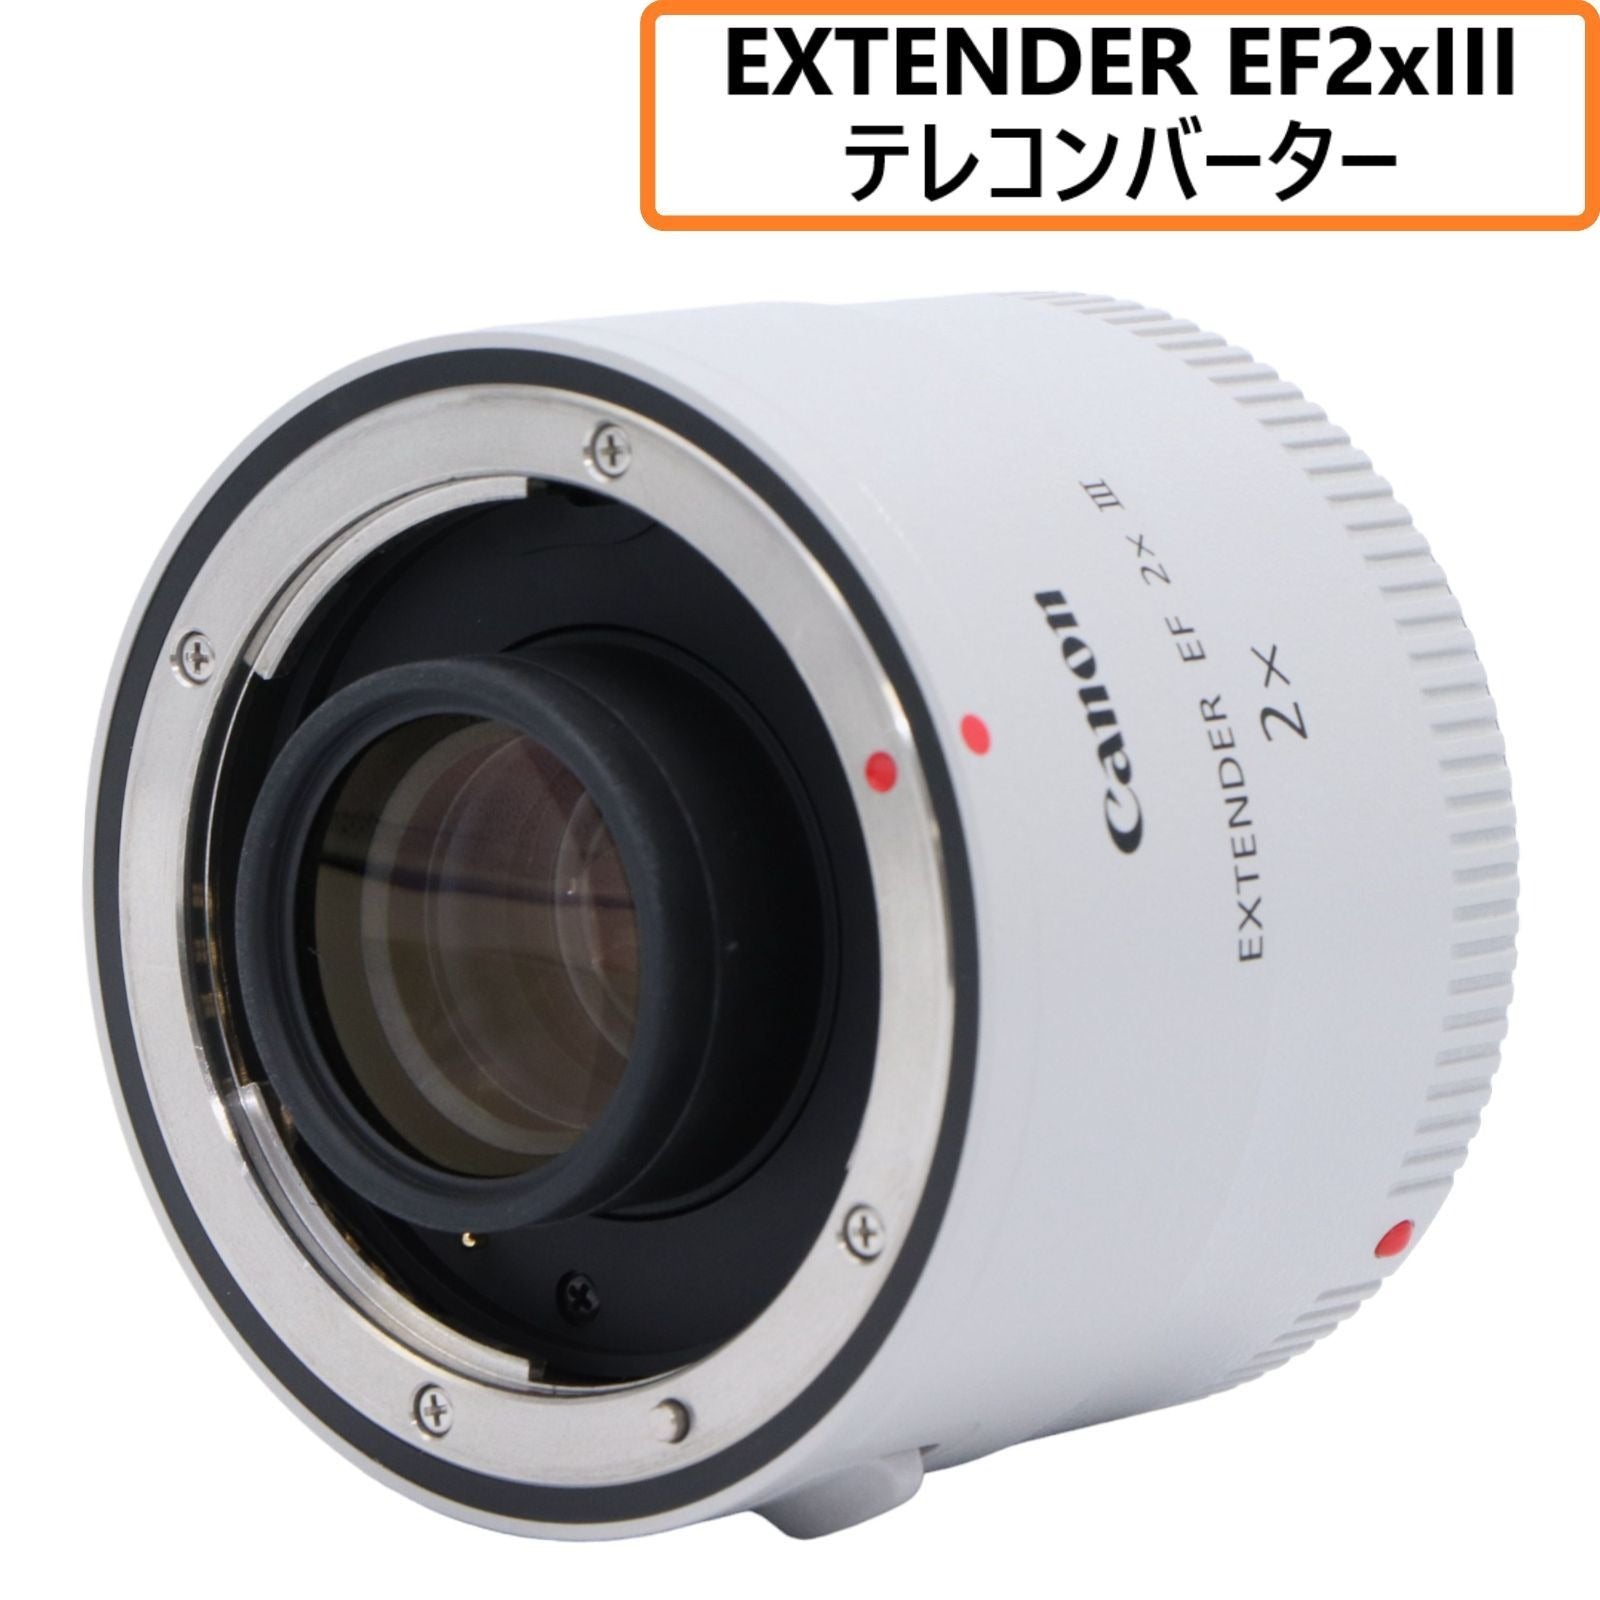 キヤノン EXTENDER EF2×III ◇ テレコン エクステンダー - カメラ